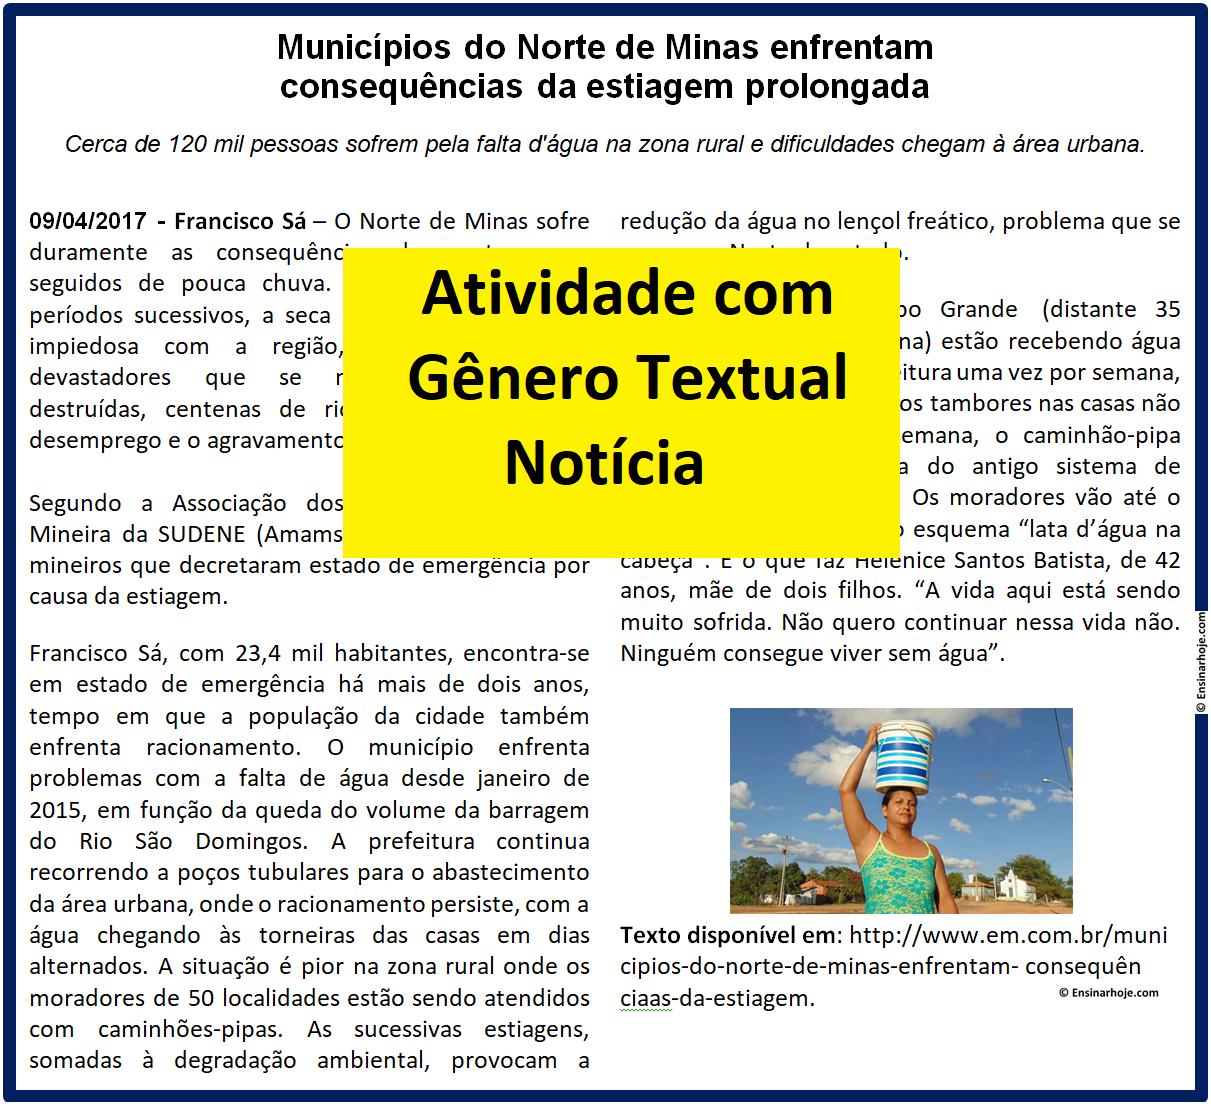 Atividade com Gênero Textual - Notícia - Seca no norte de Minas